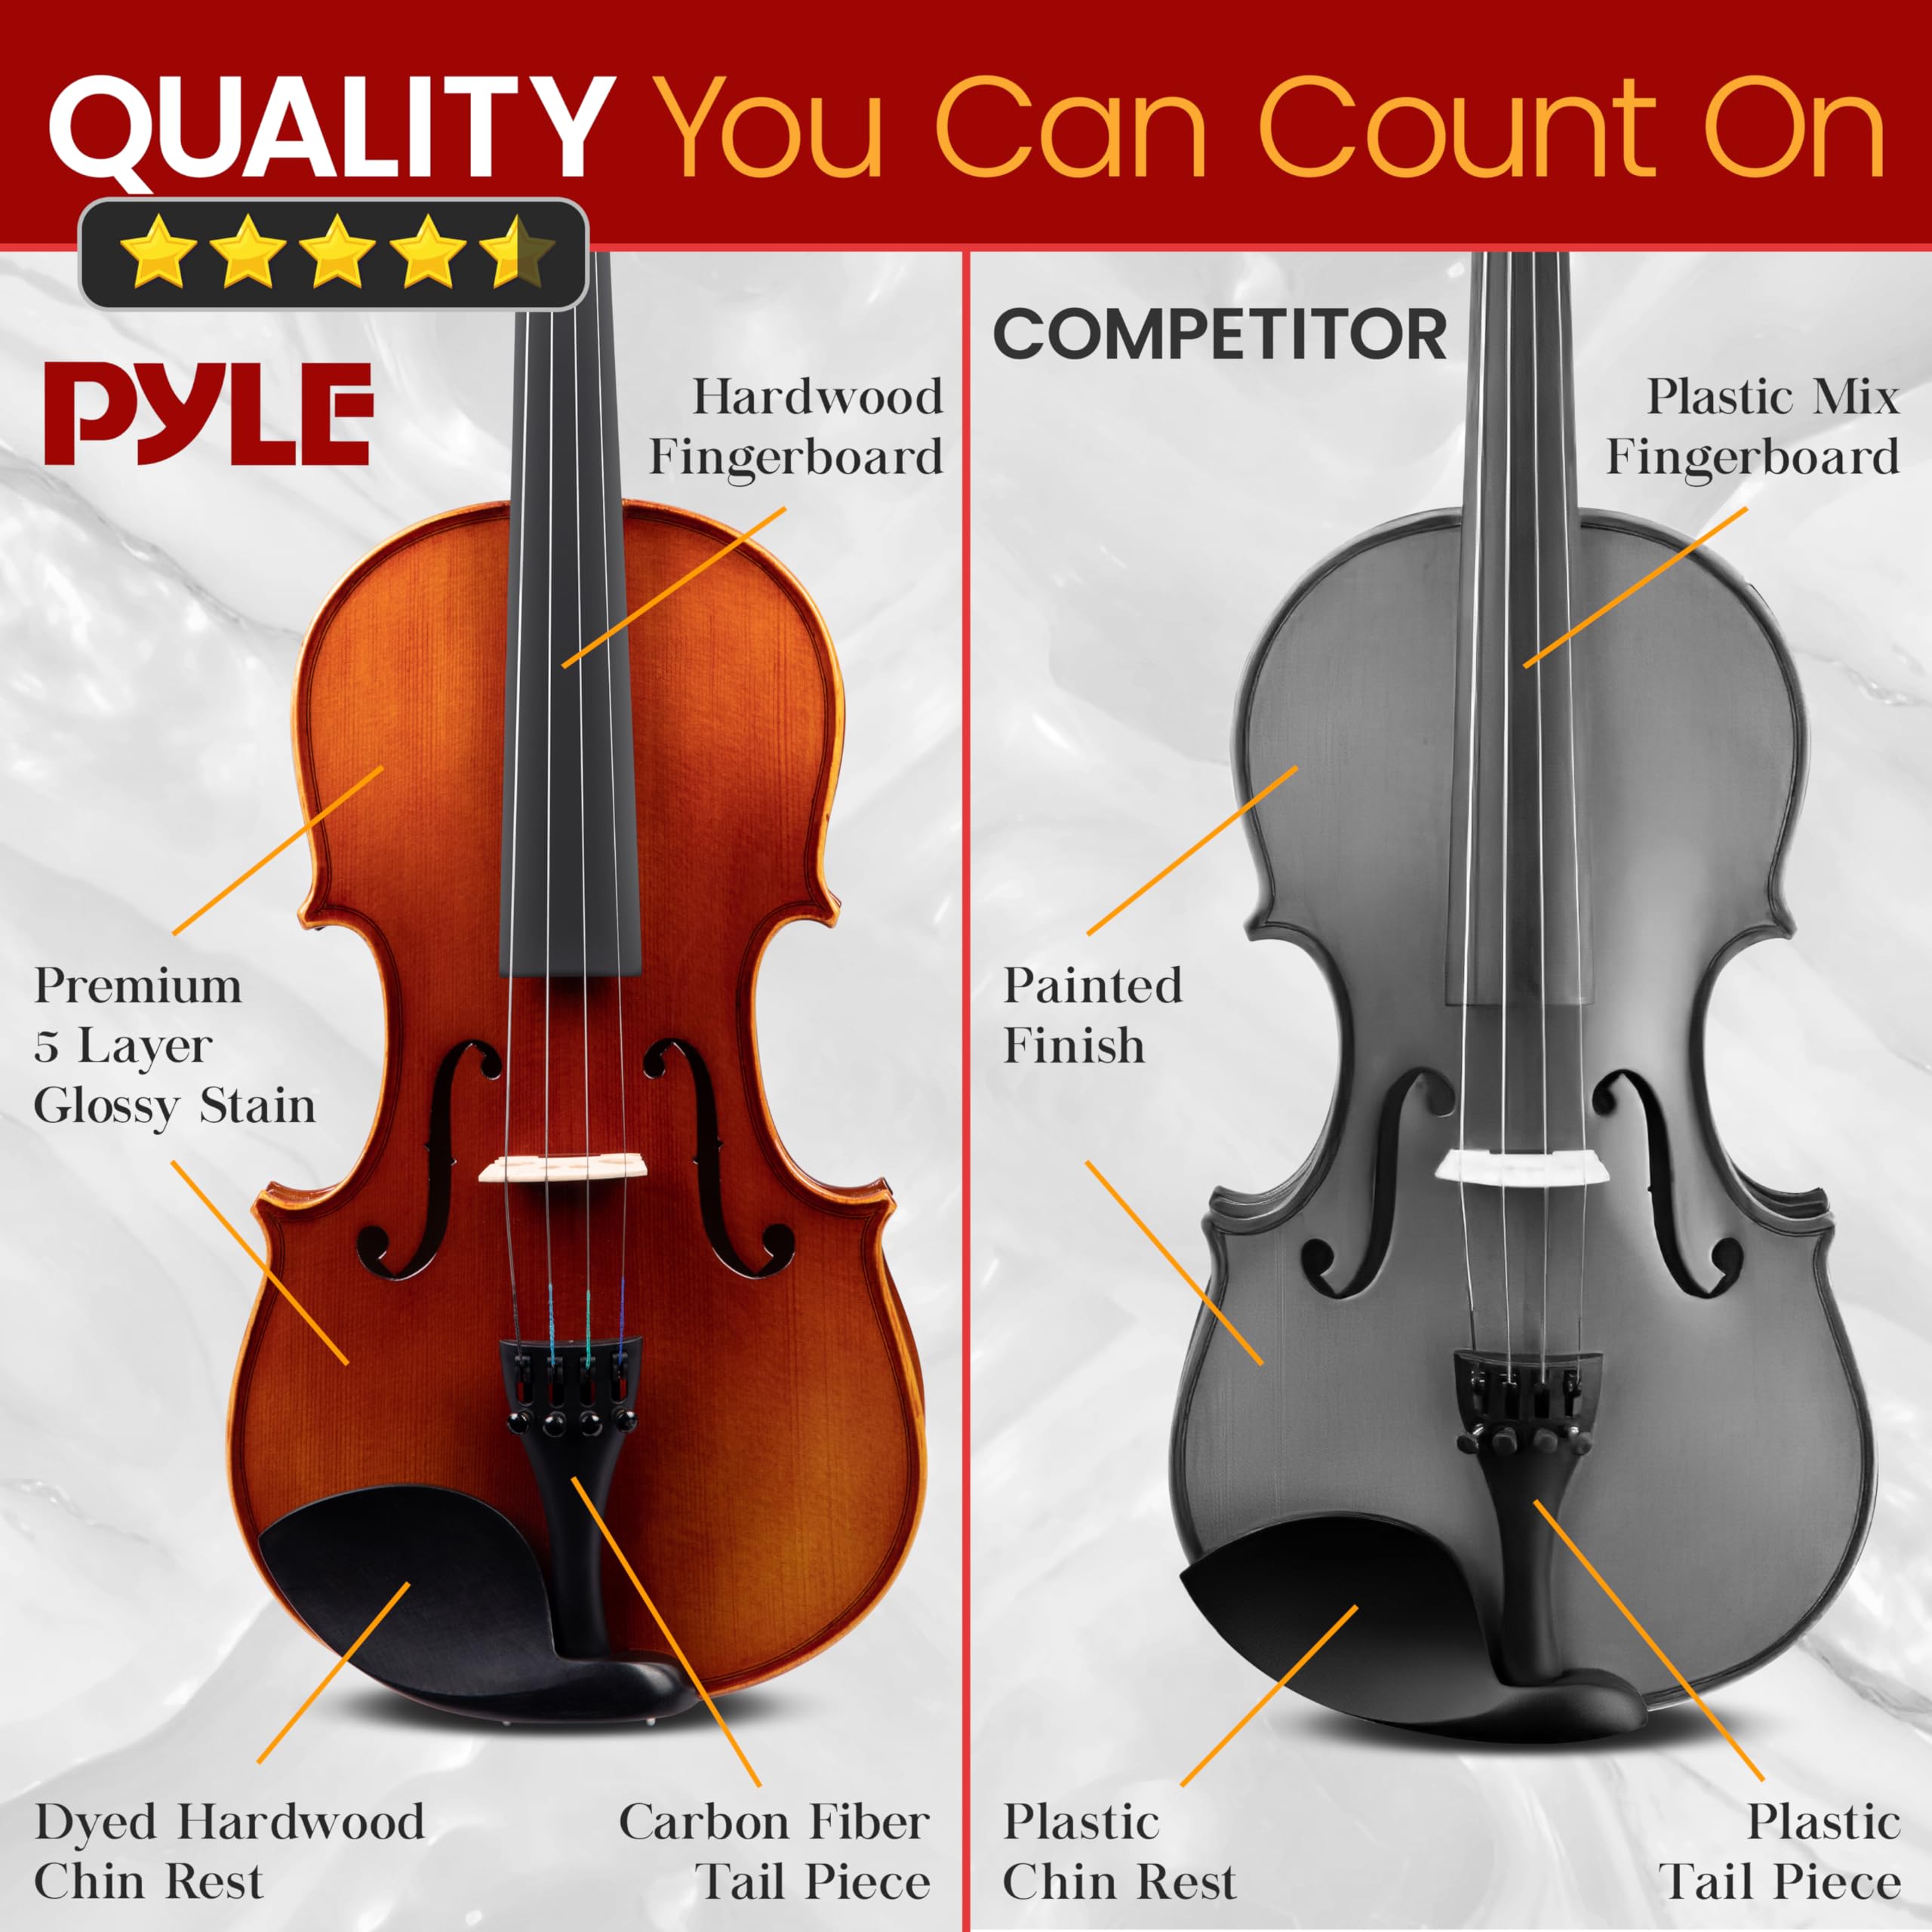 Pyle 3/4 Size Beginner Violin Starter Kit, Violin Starter Package with Travel Case & Bow, Extra Strings, Digital Tuner, Shoulder